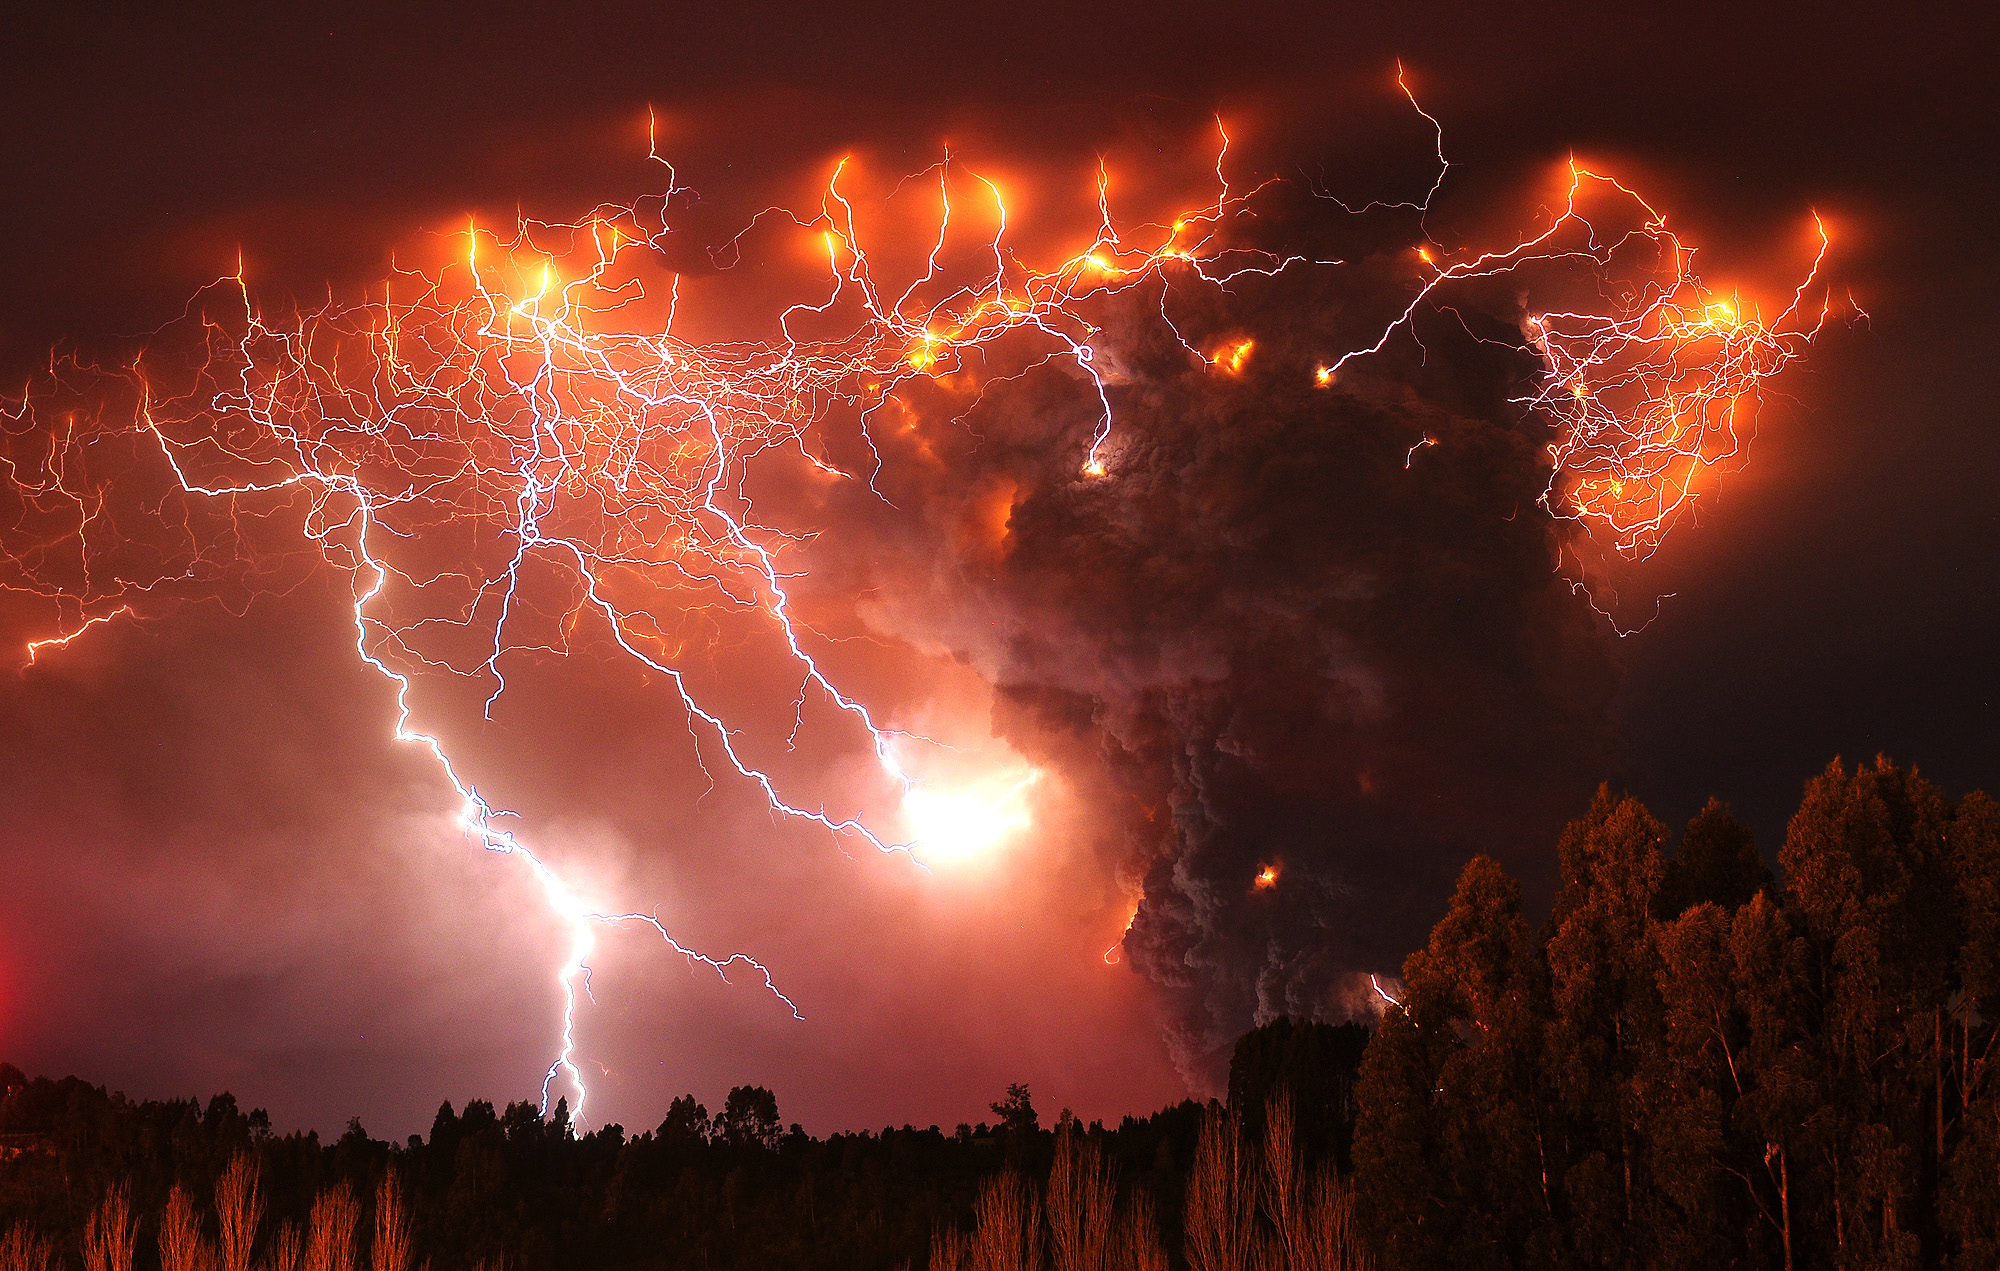 Den 4 juni 2011 utbryter ett vulkanutbrott i Chile. 3000 människor tvingades fly från sina hem till följd av utbrottet. 